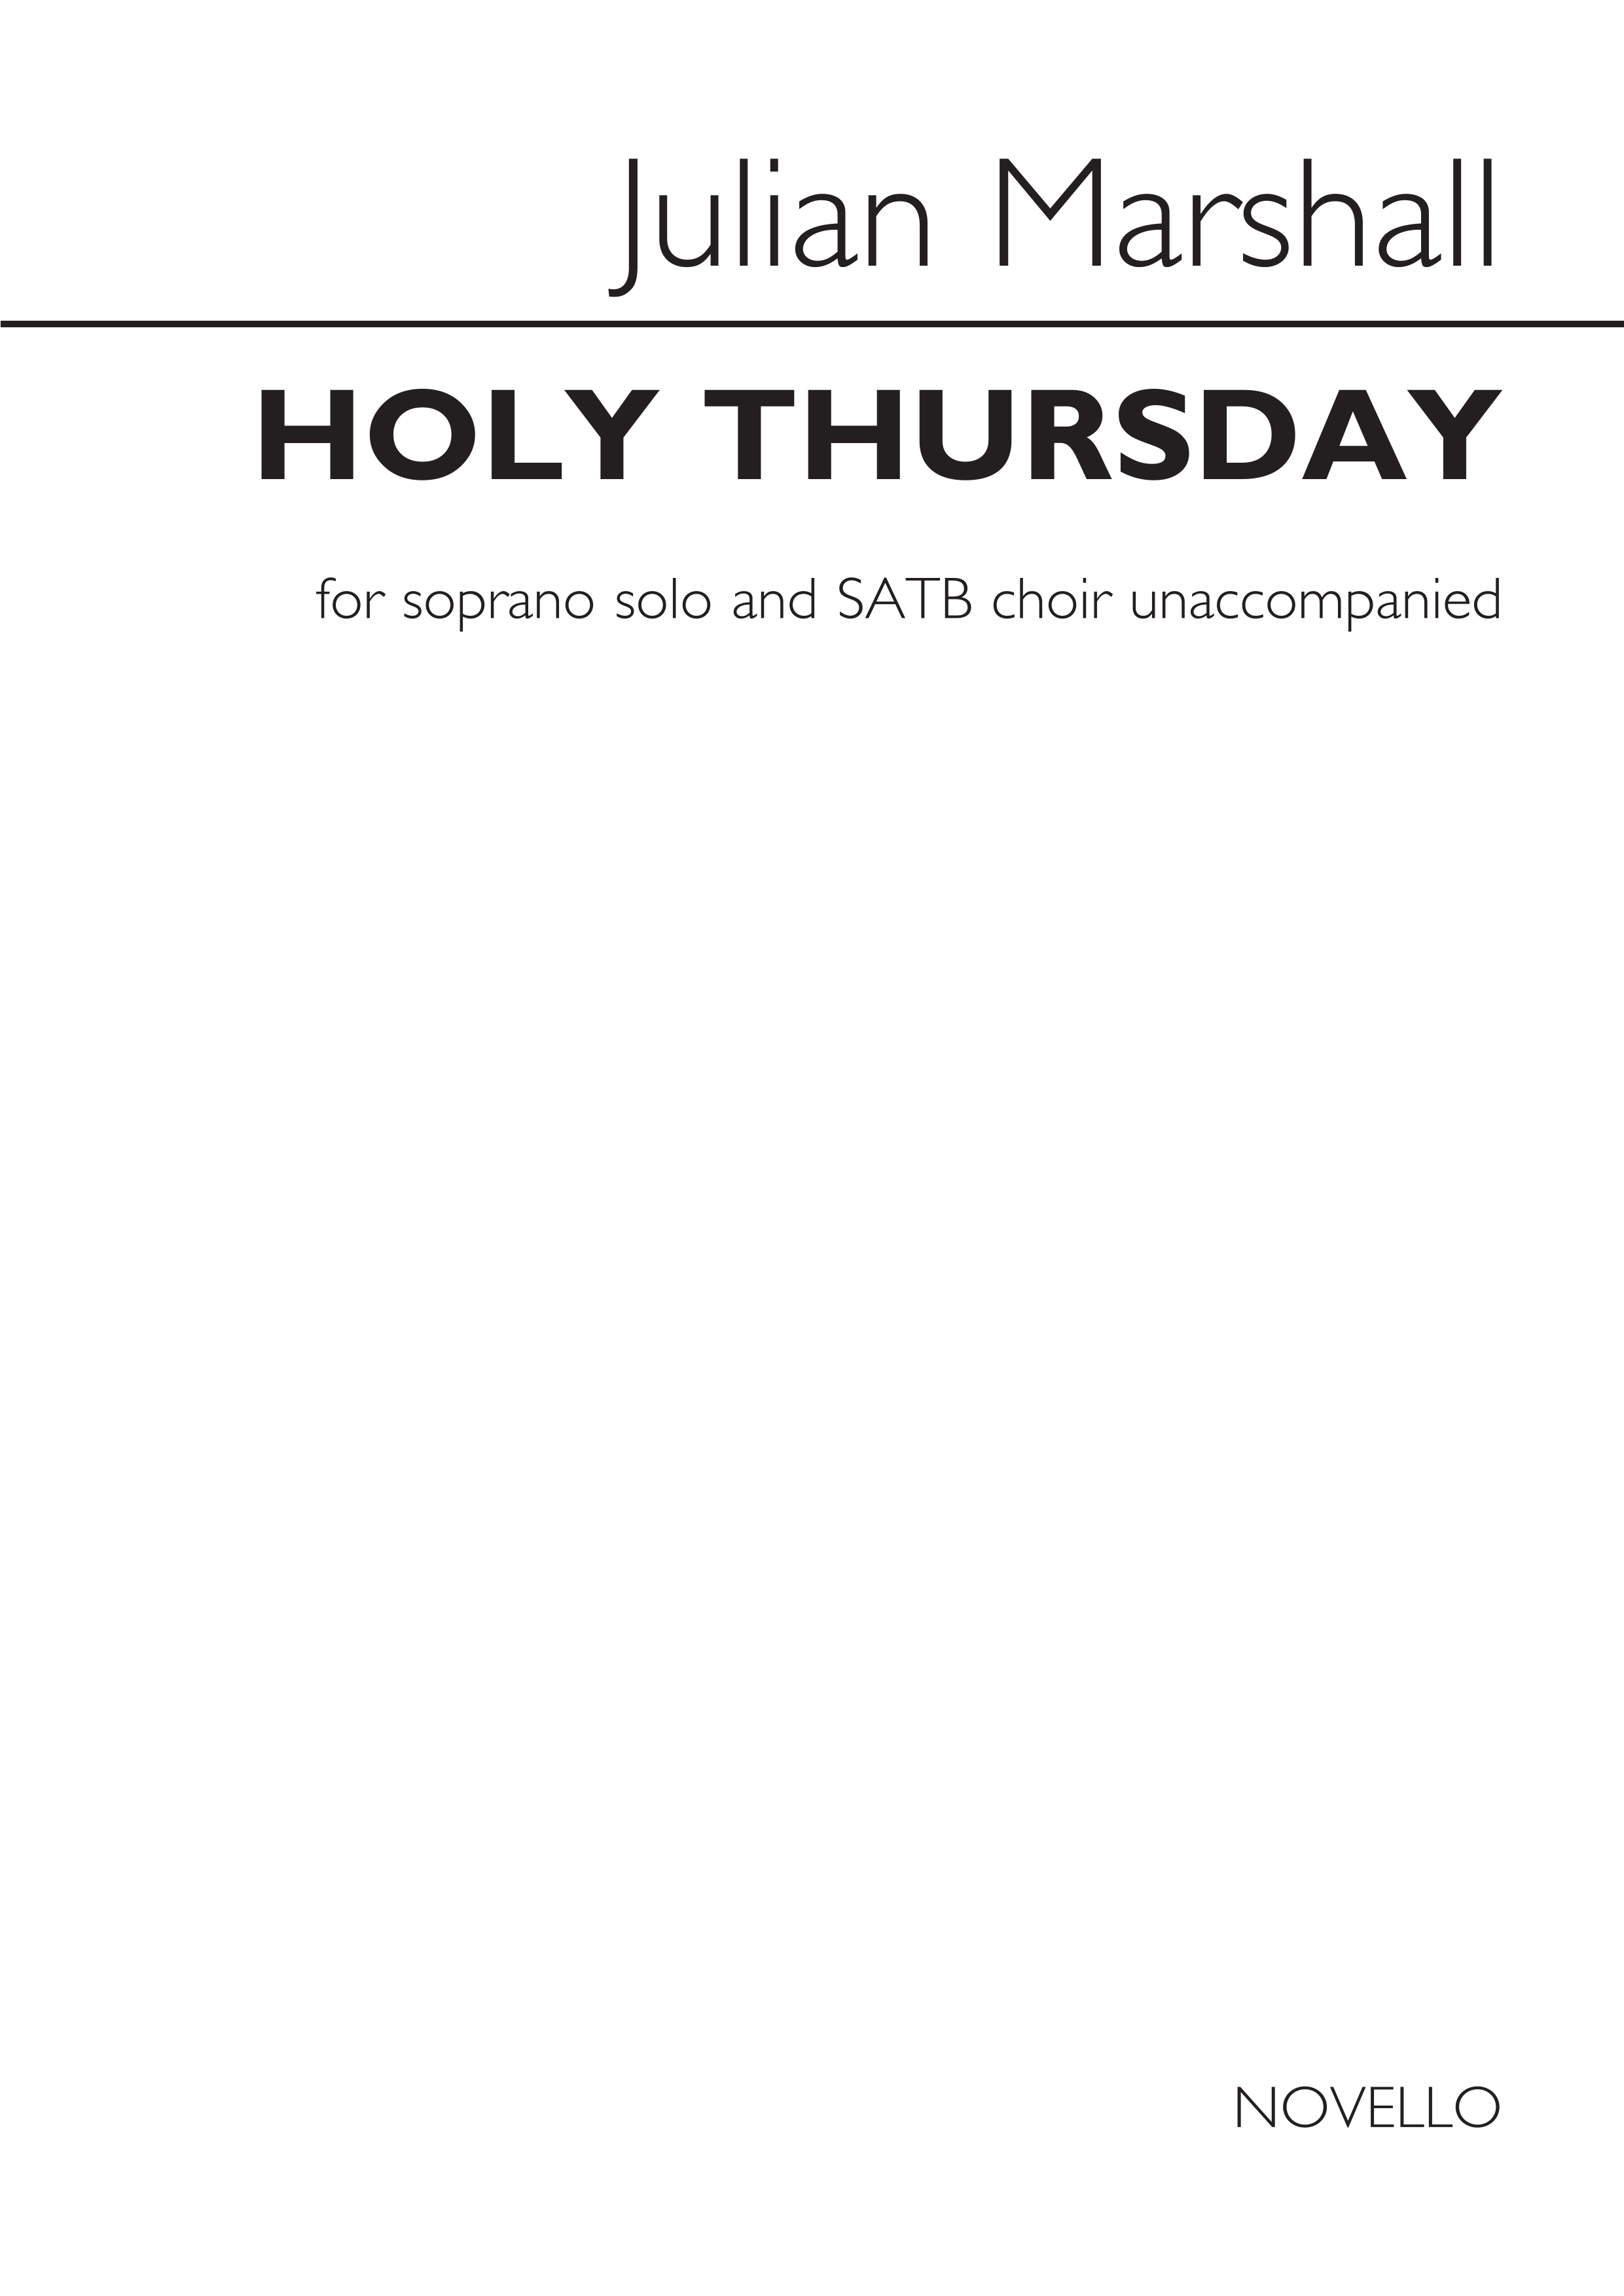 Julian Marshall: Julian Marshall: Holy Thursday: Soprano & SATB: Vocal Score